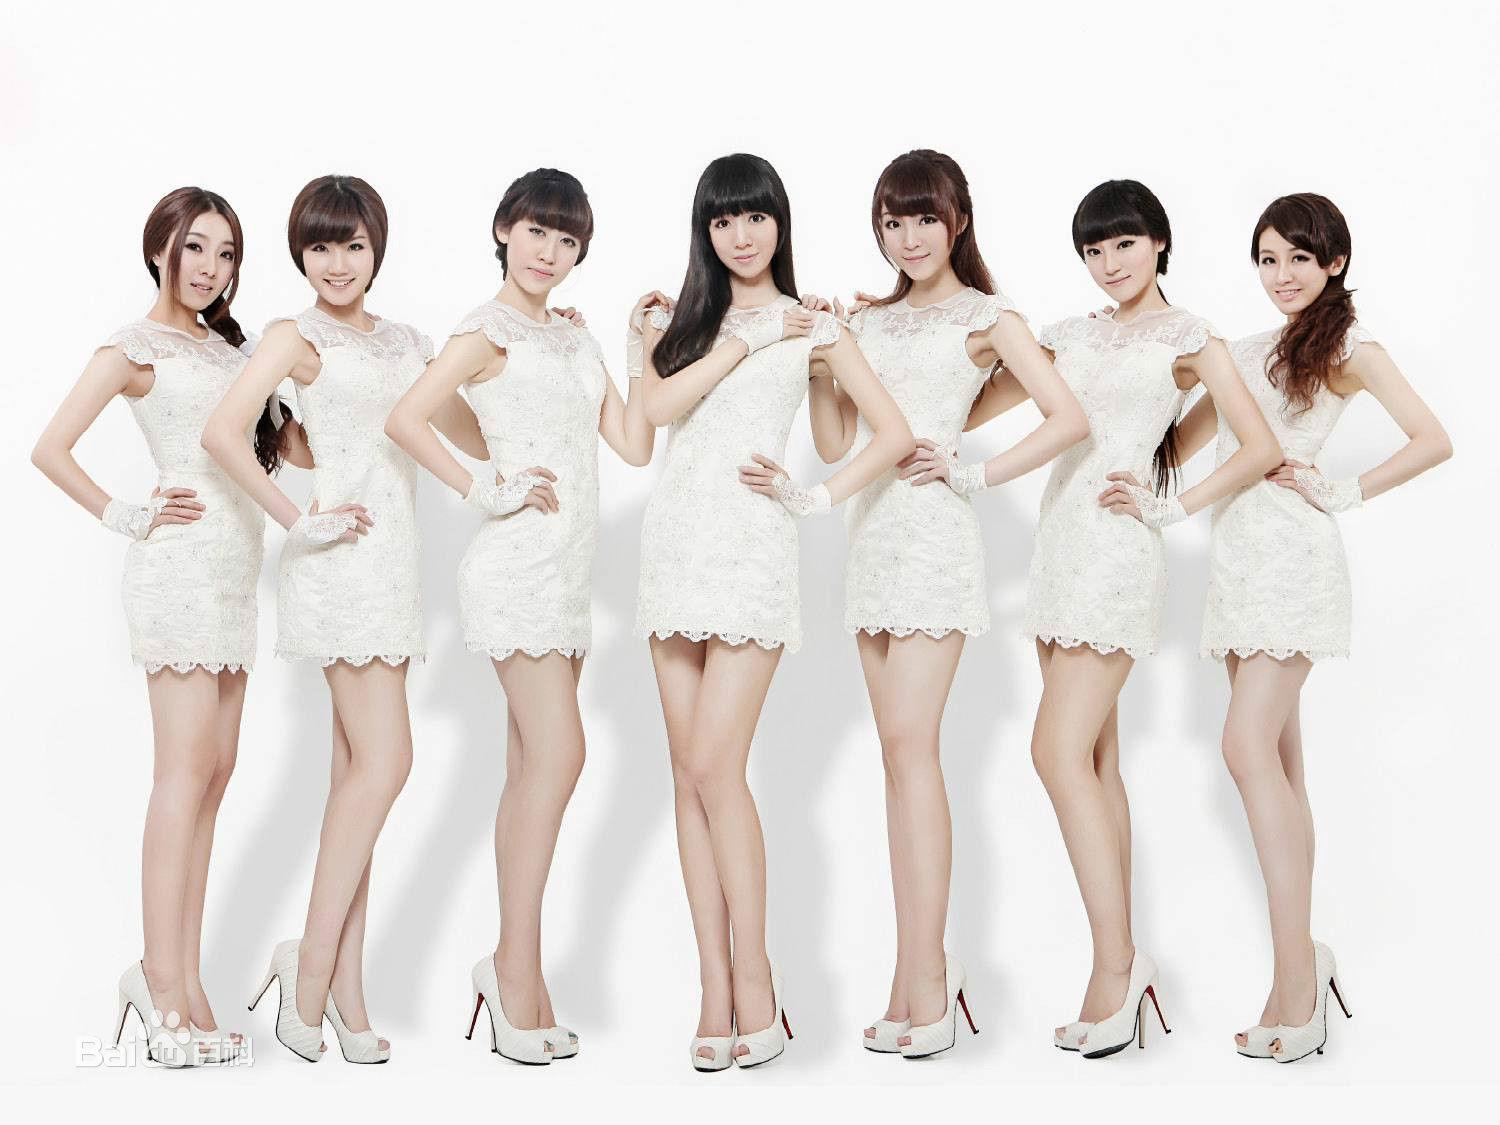 【个人向】喜欢的韩国女团歌曲_明星_娱乐_bilibili_哔哩哔哩